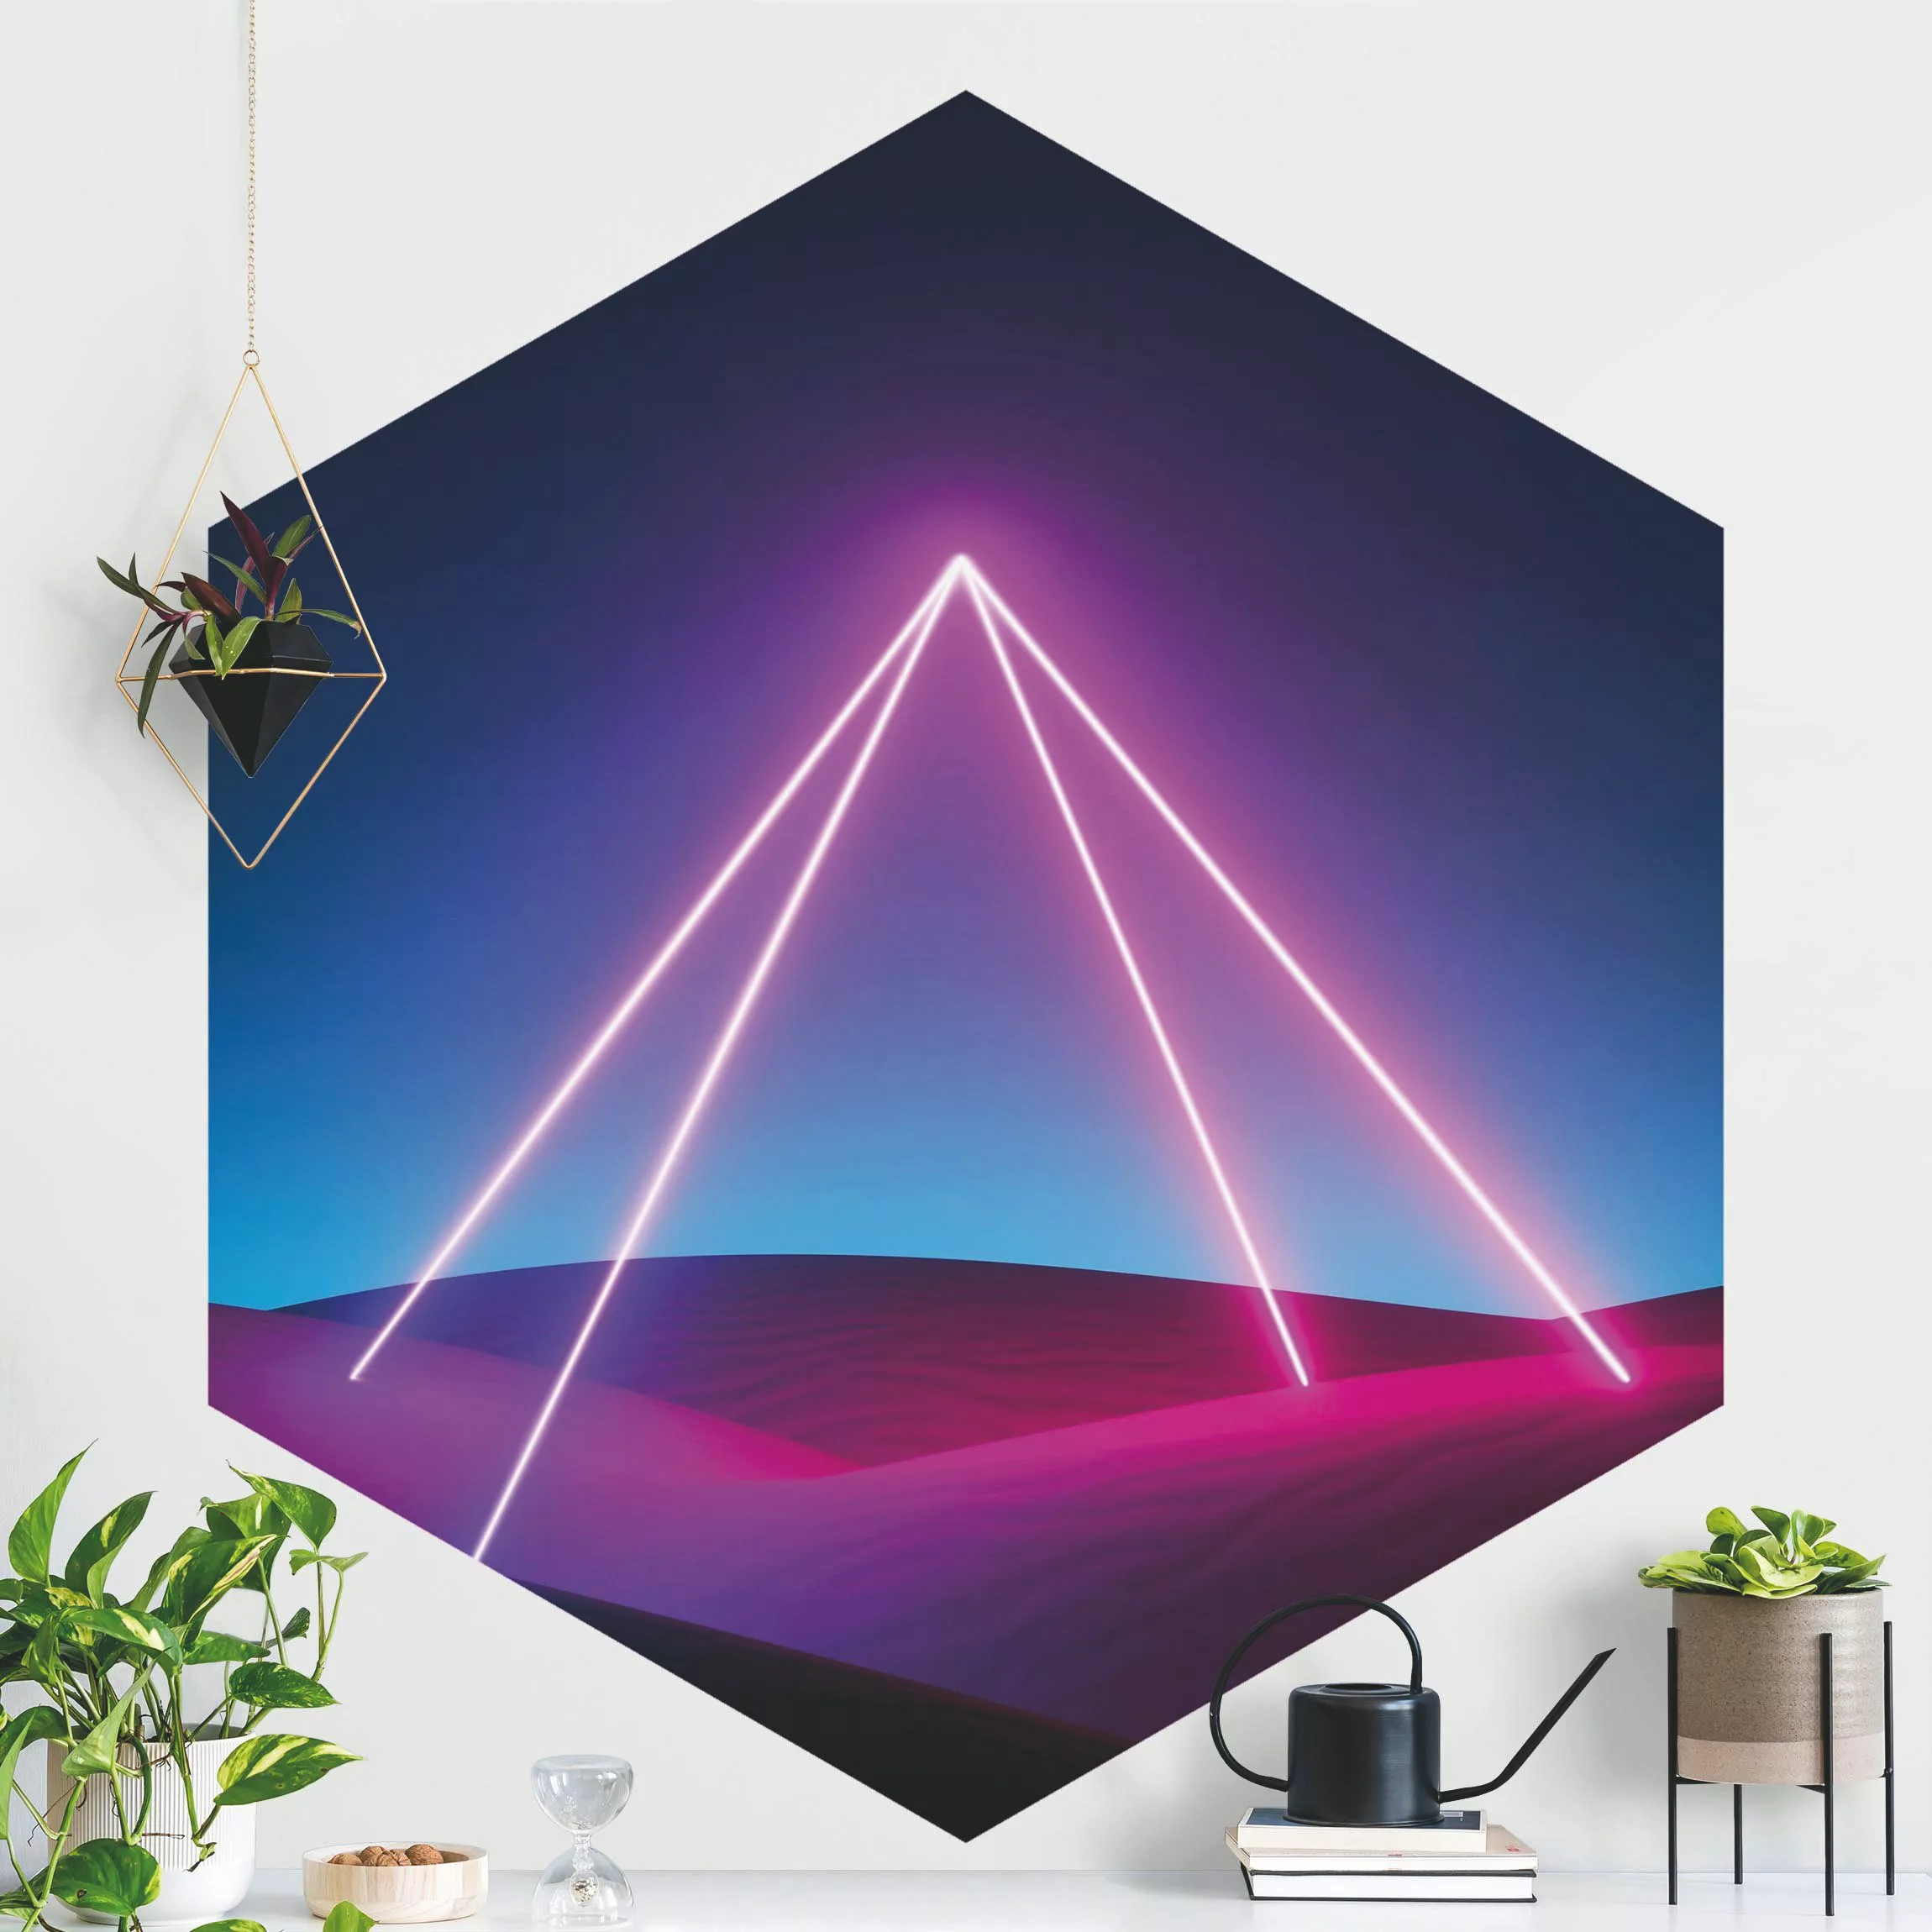 Hexagon Mustertapete selbstklebend Neonlichtpyramide günstig online kaufen